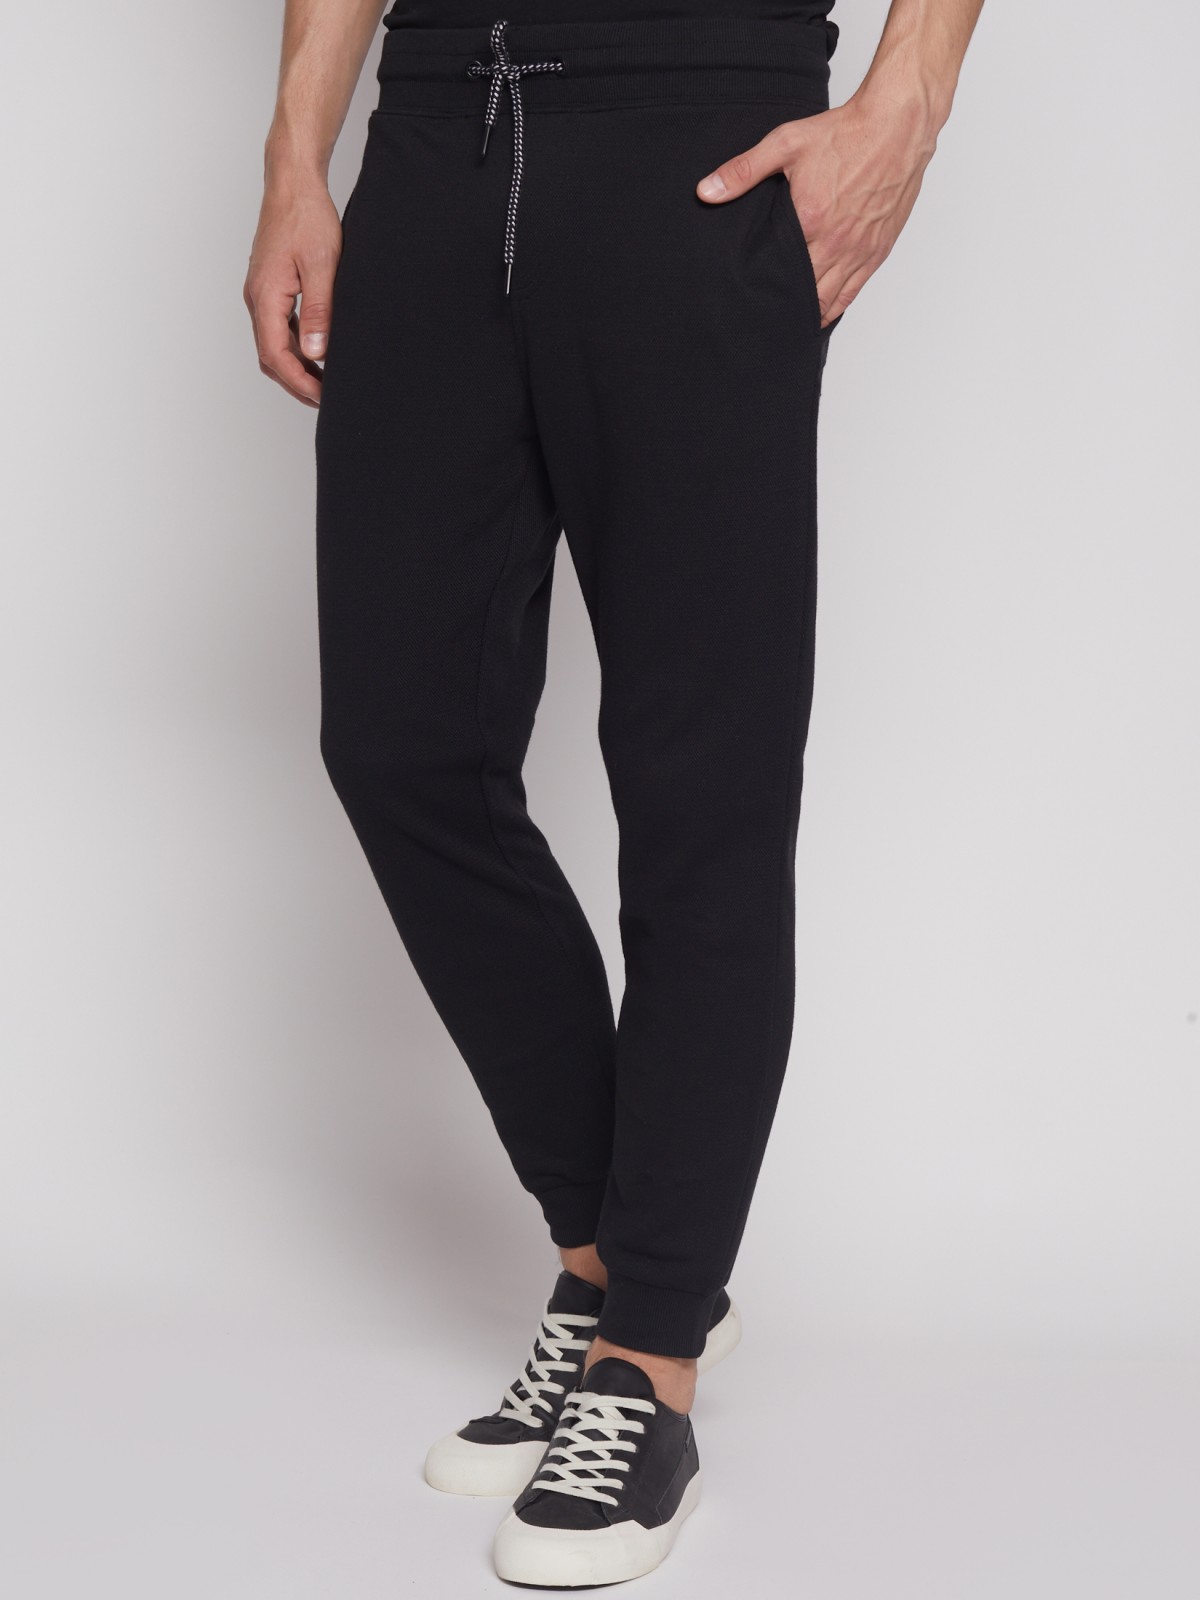 Спортивные брюки-джоггеры zolla 21231762F012, цвет черный, размер S - фото 5